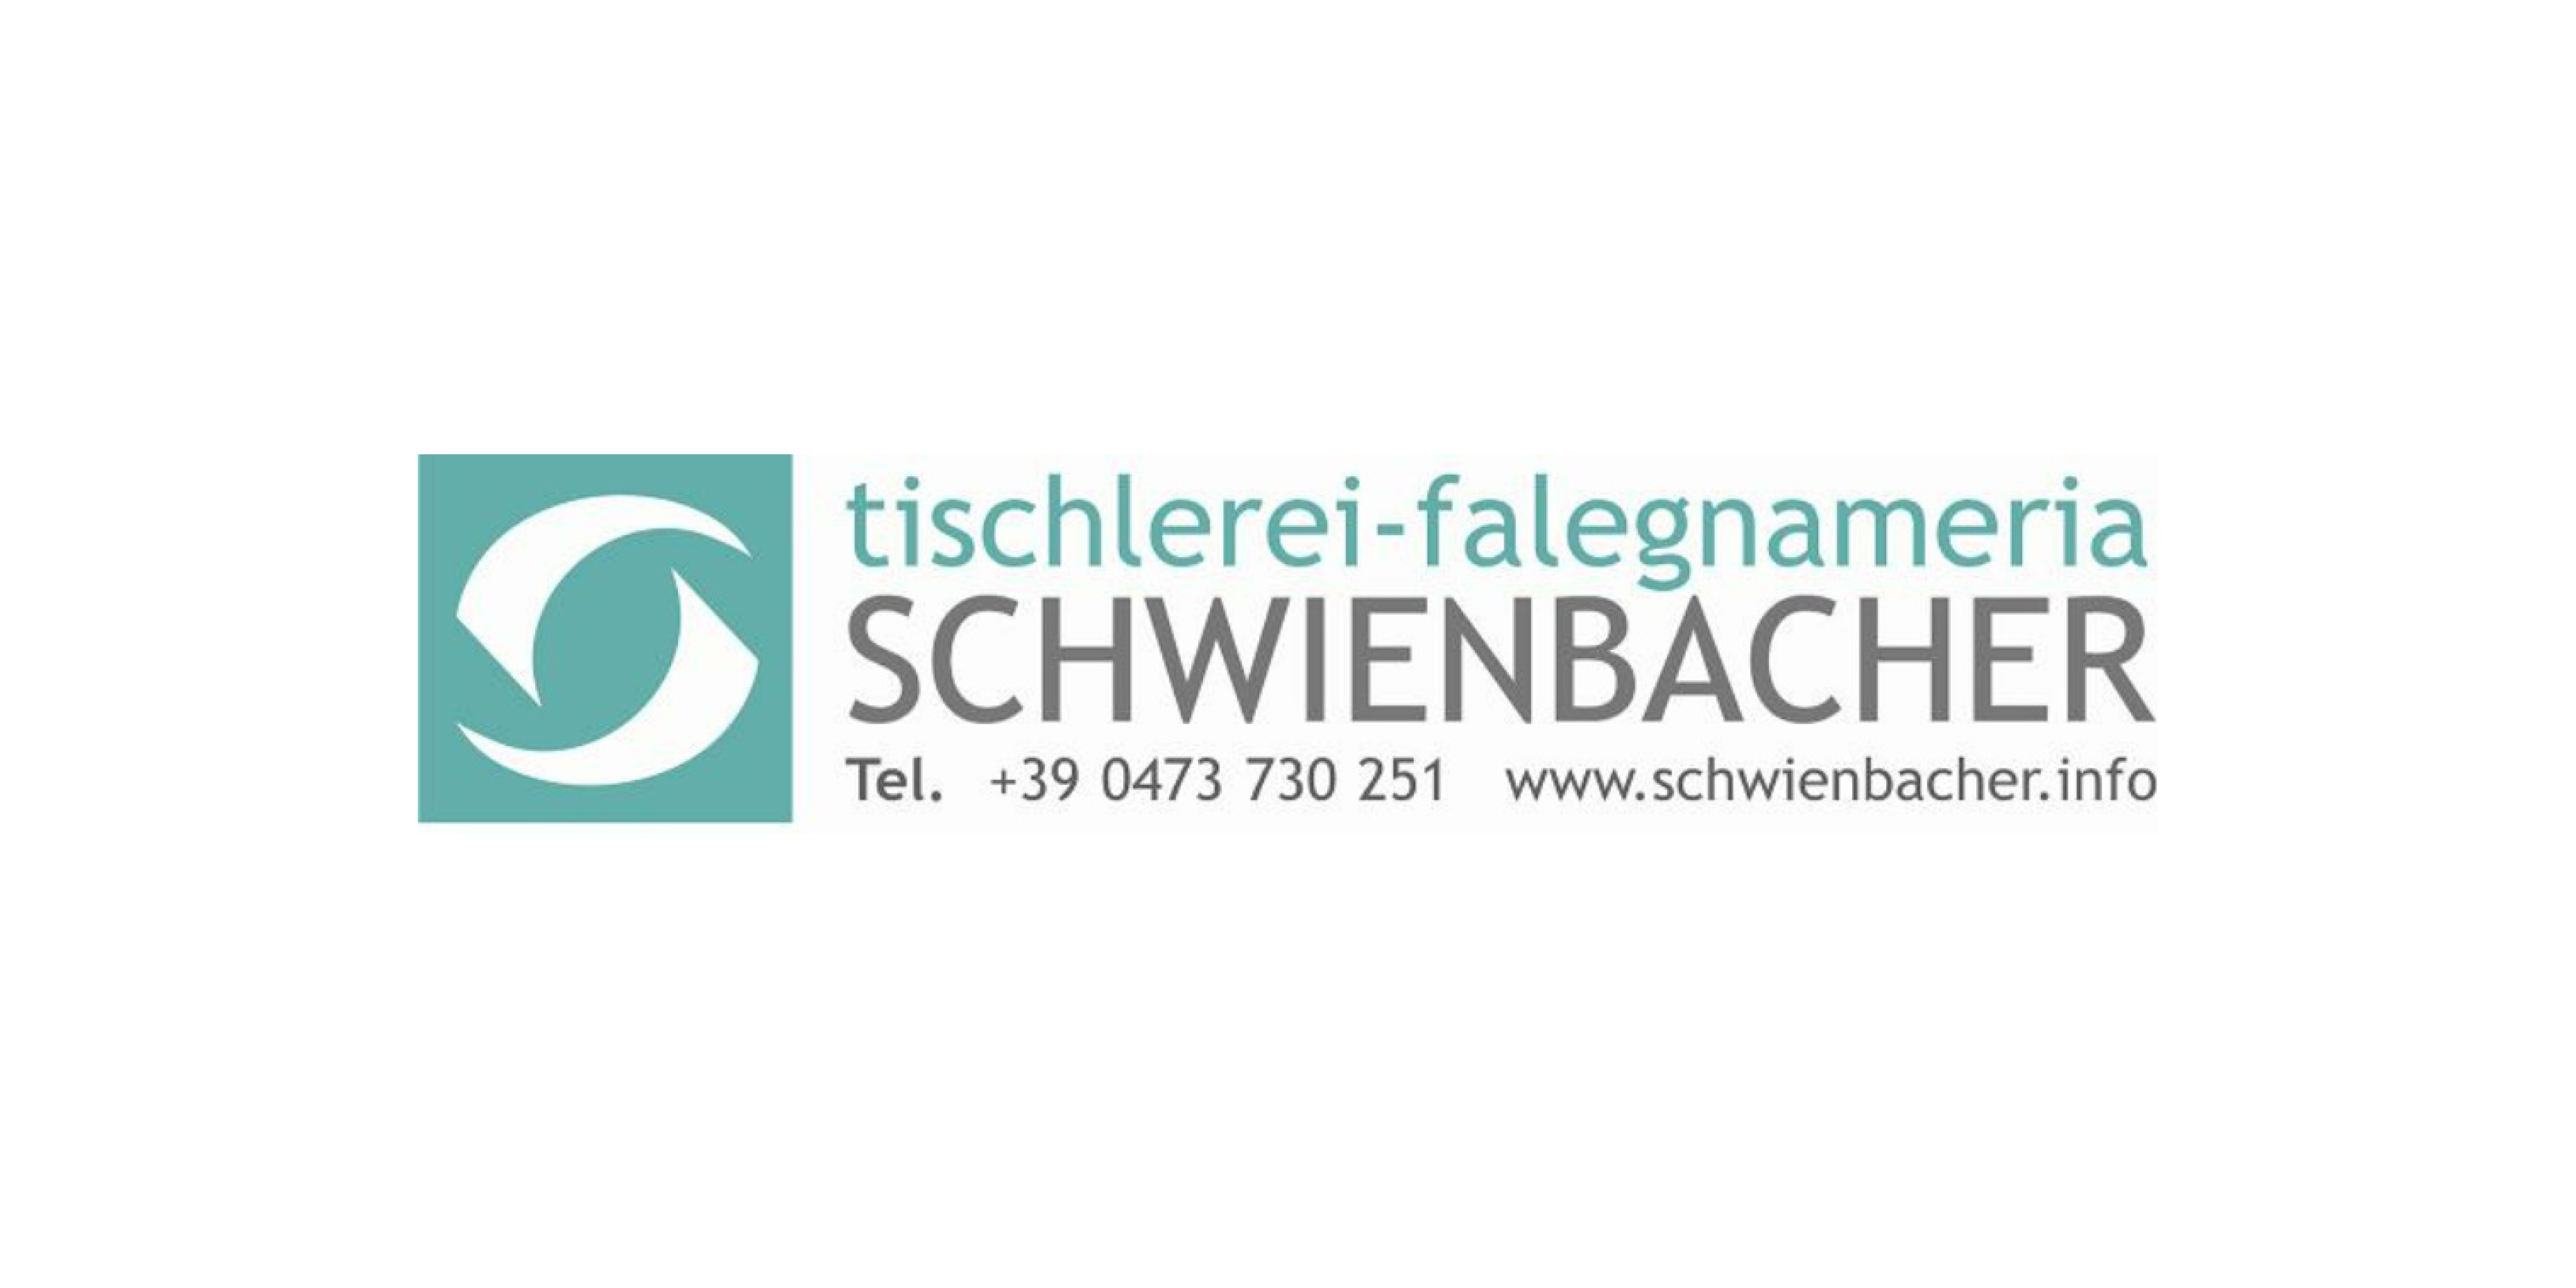 Tischlerei Schwienbacher d.Klaus Schwienbacher & Co.KG | sas